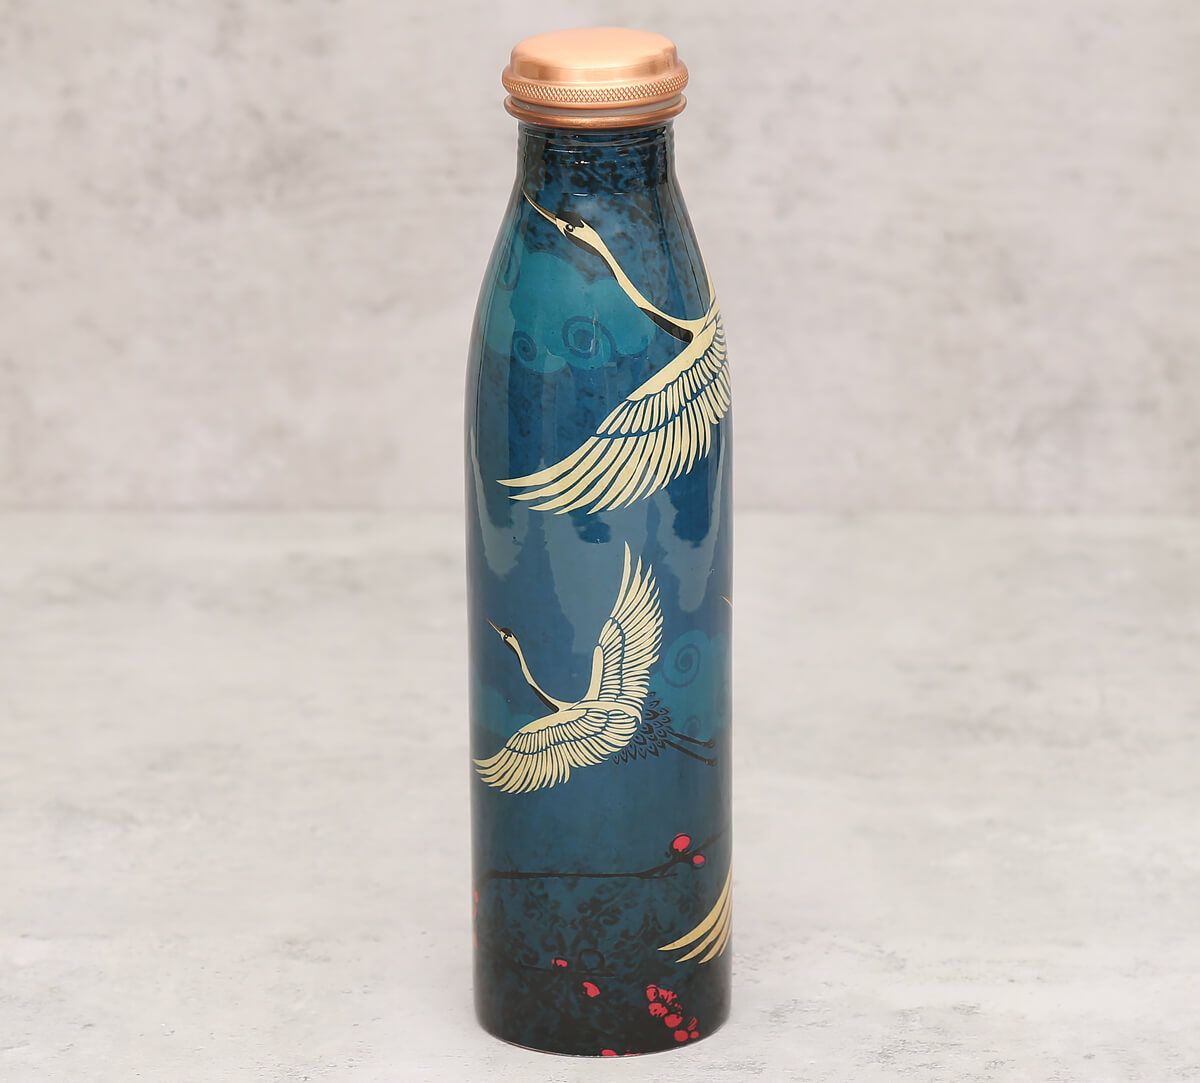 Legend of the Cranes Copper Bottle